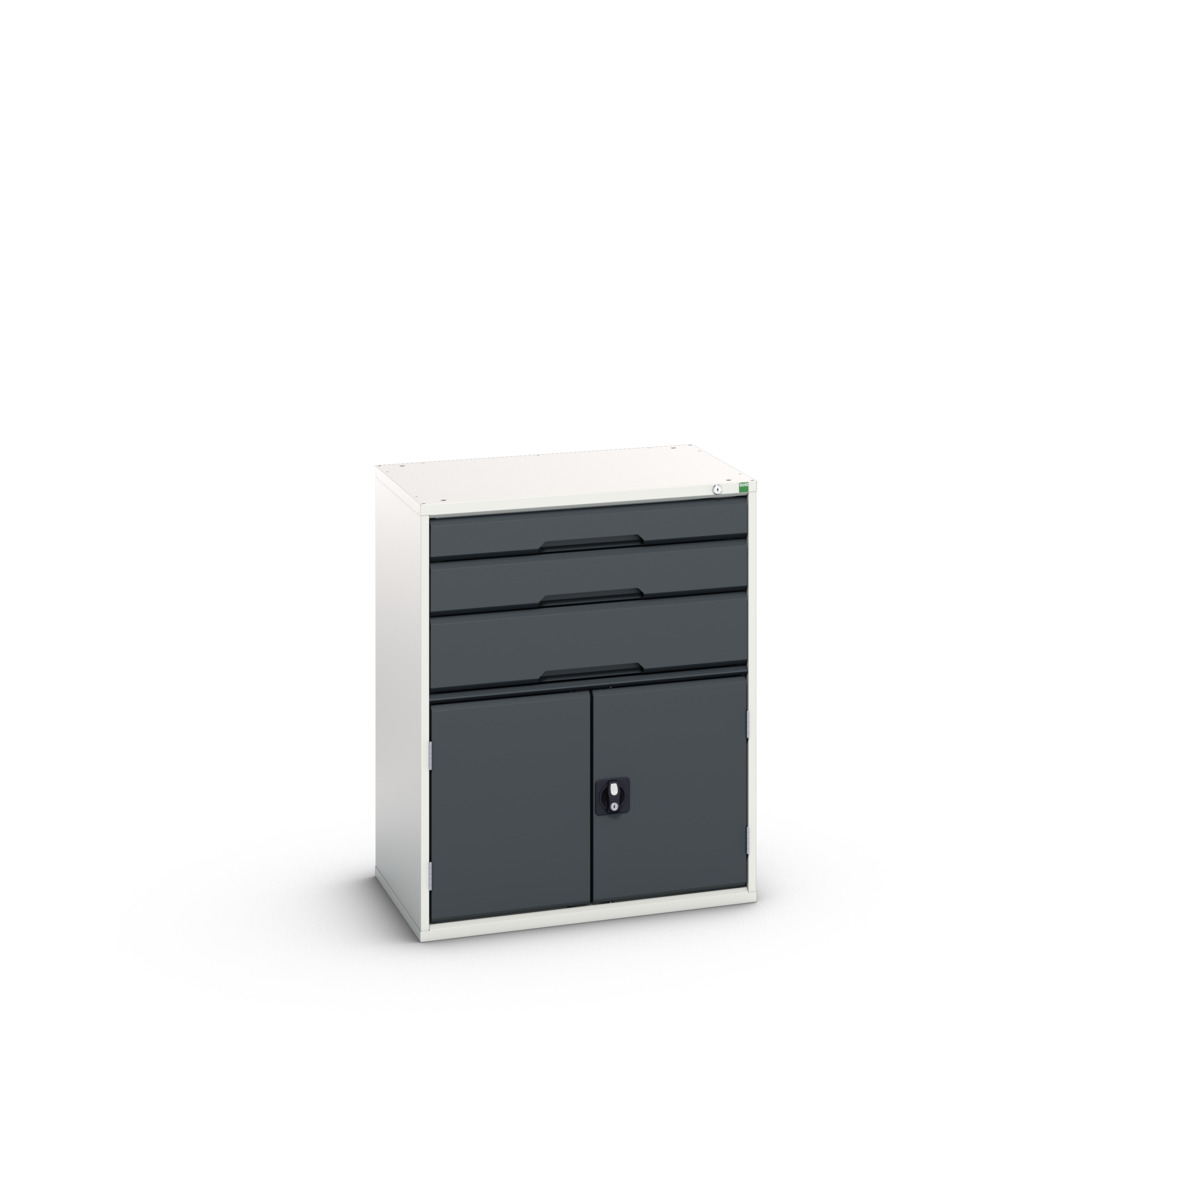 16925161. - verso drawer-door cabinet